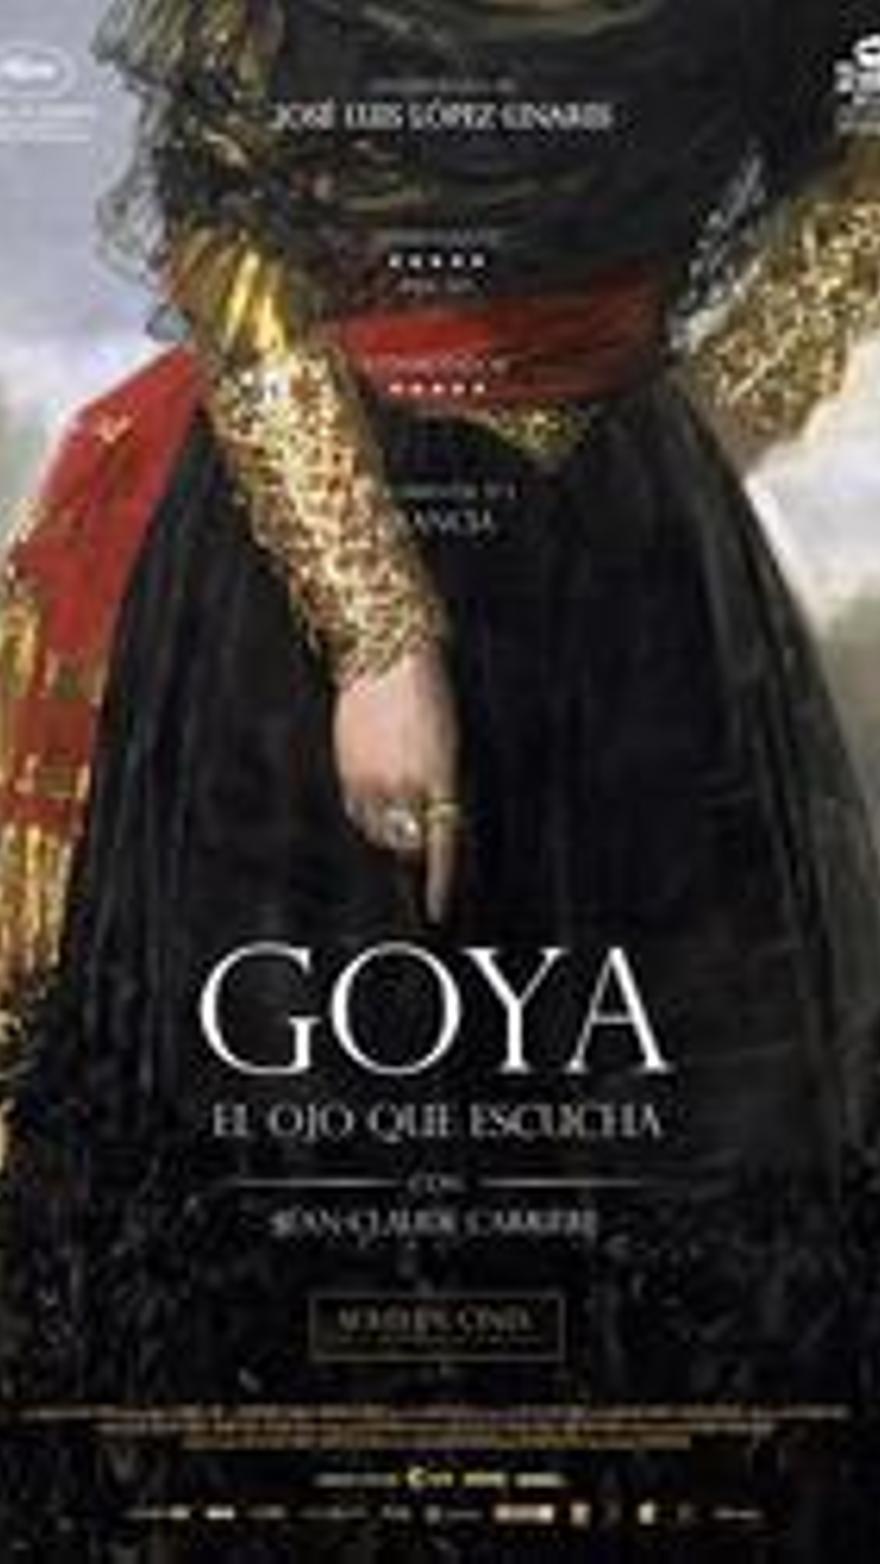 Goya, el ojo que escucha V.O.S.E.